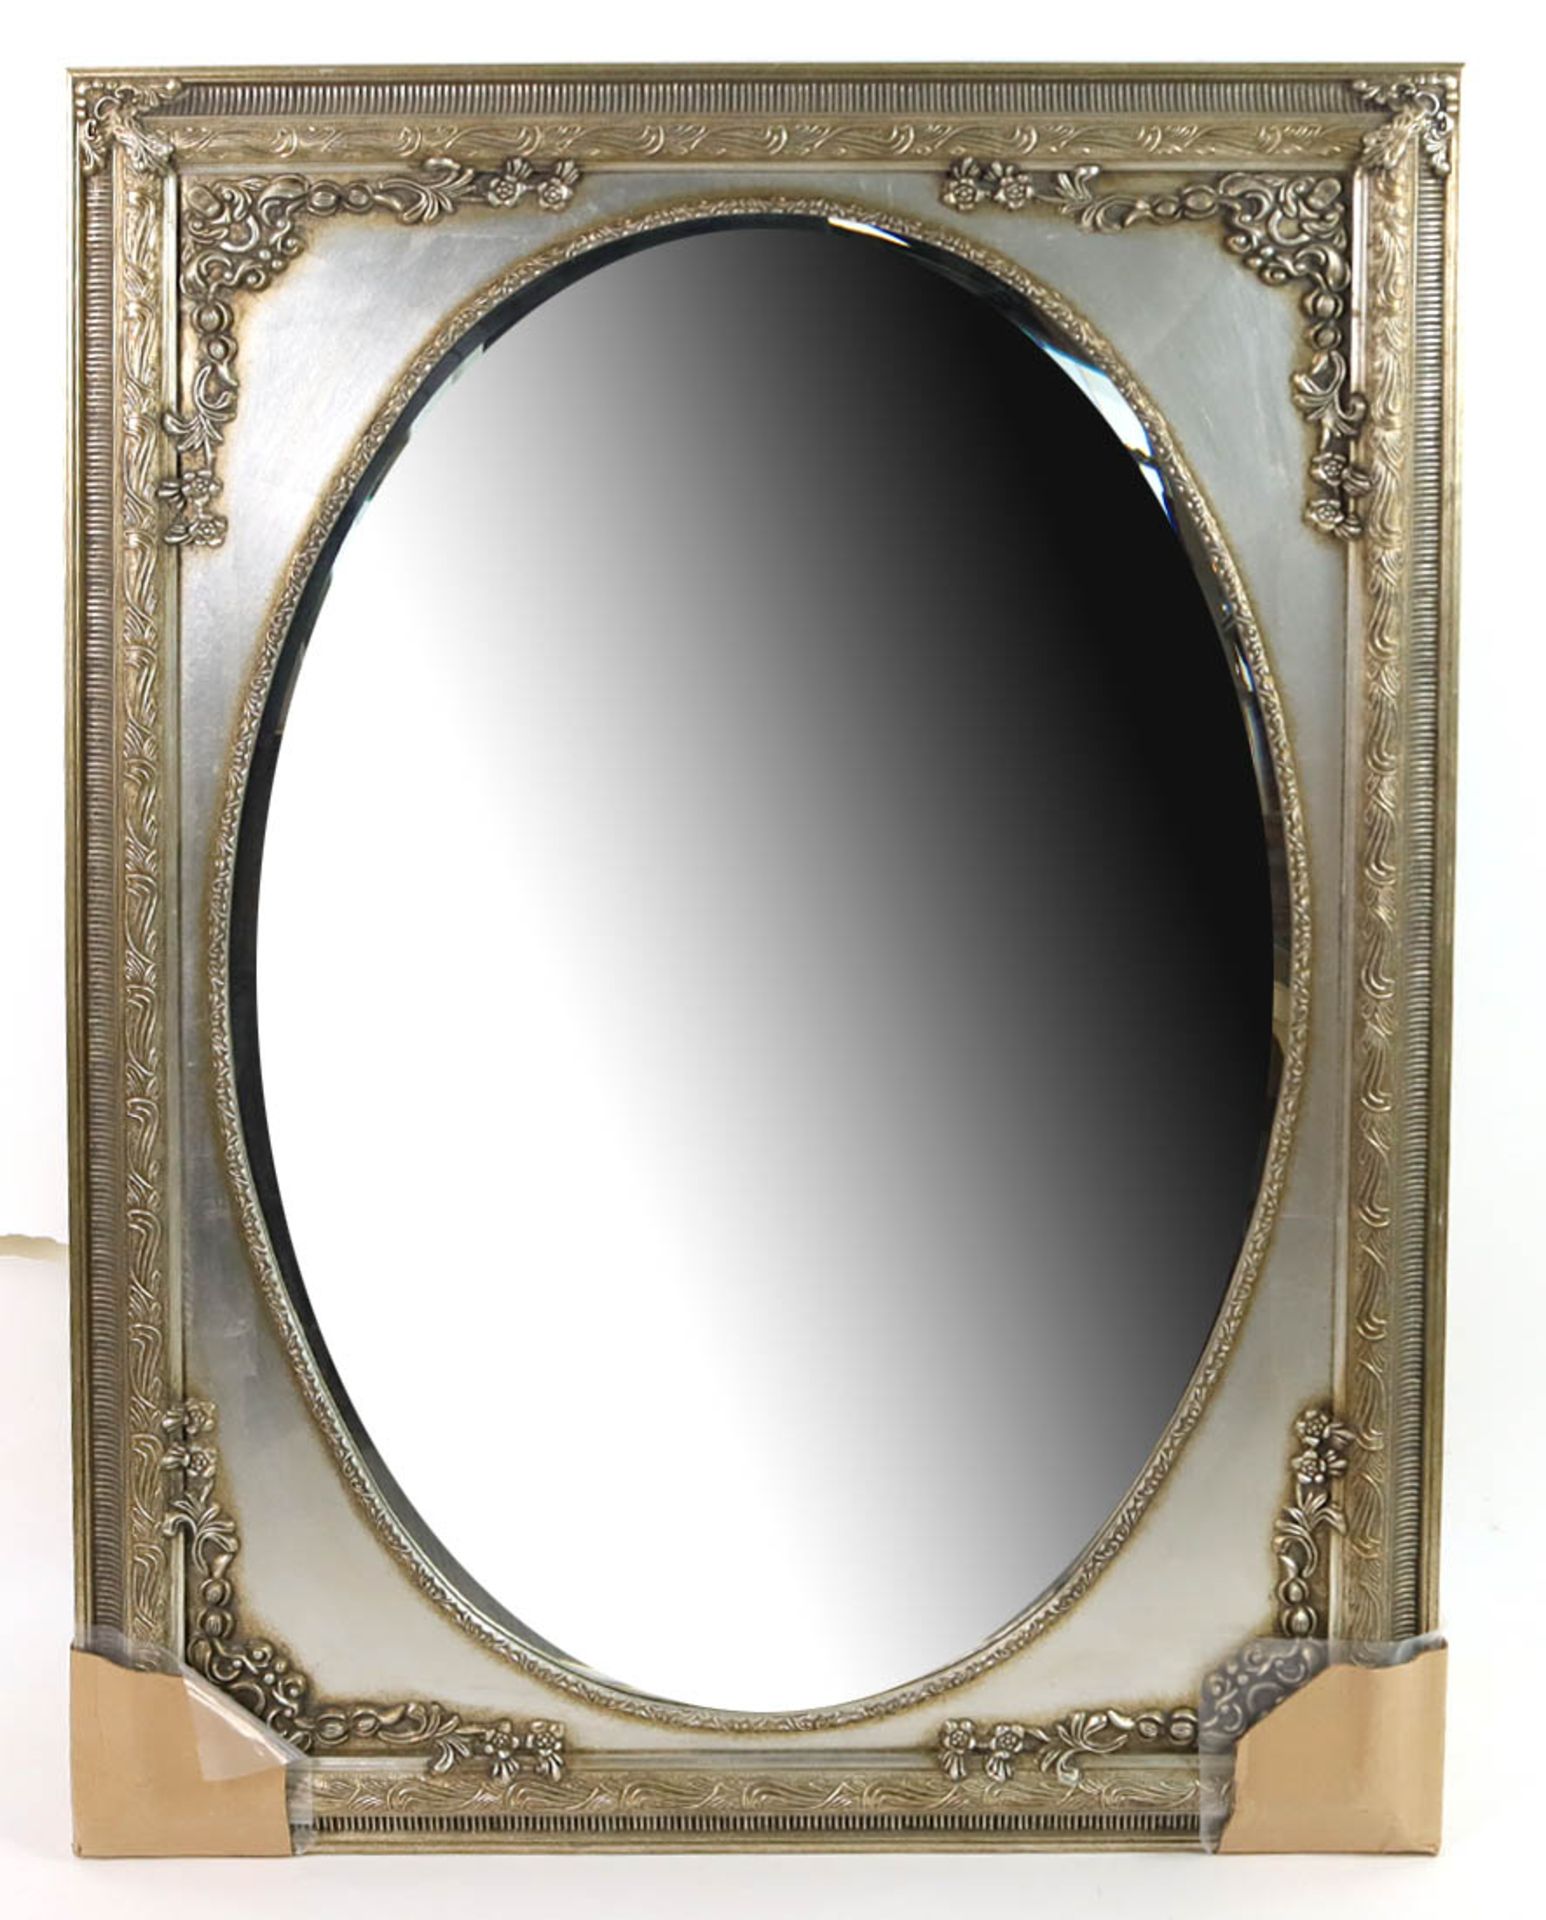 Spiegel mit Zierrahmenrechteckiger, reich florale verzierter Silberrahmen mit ovalem Facettenglas